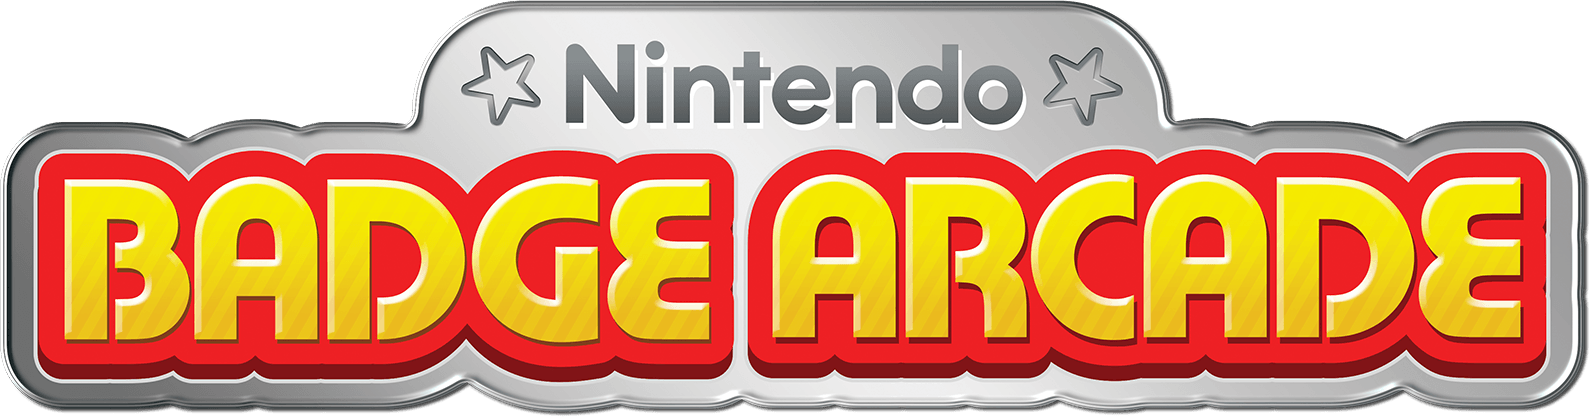 Nintendo 3DS Logo - Nintendo Badge Arcade for Nintendo 3DS